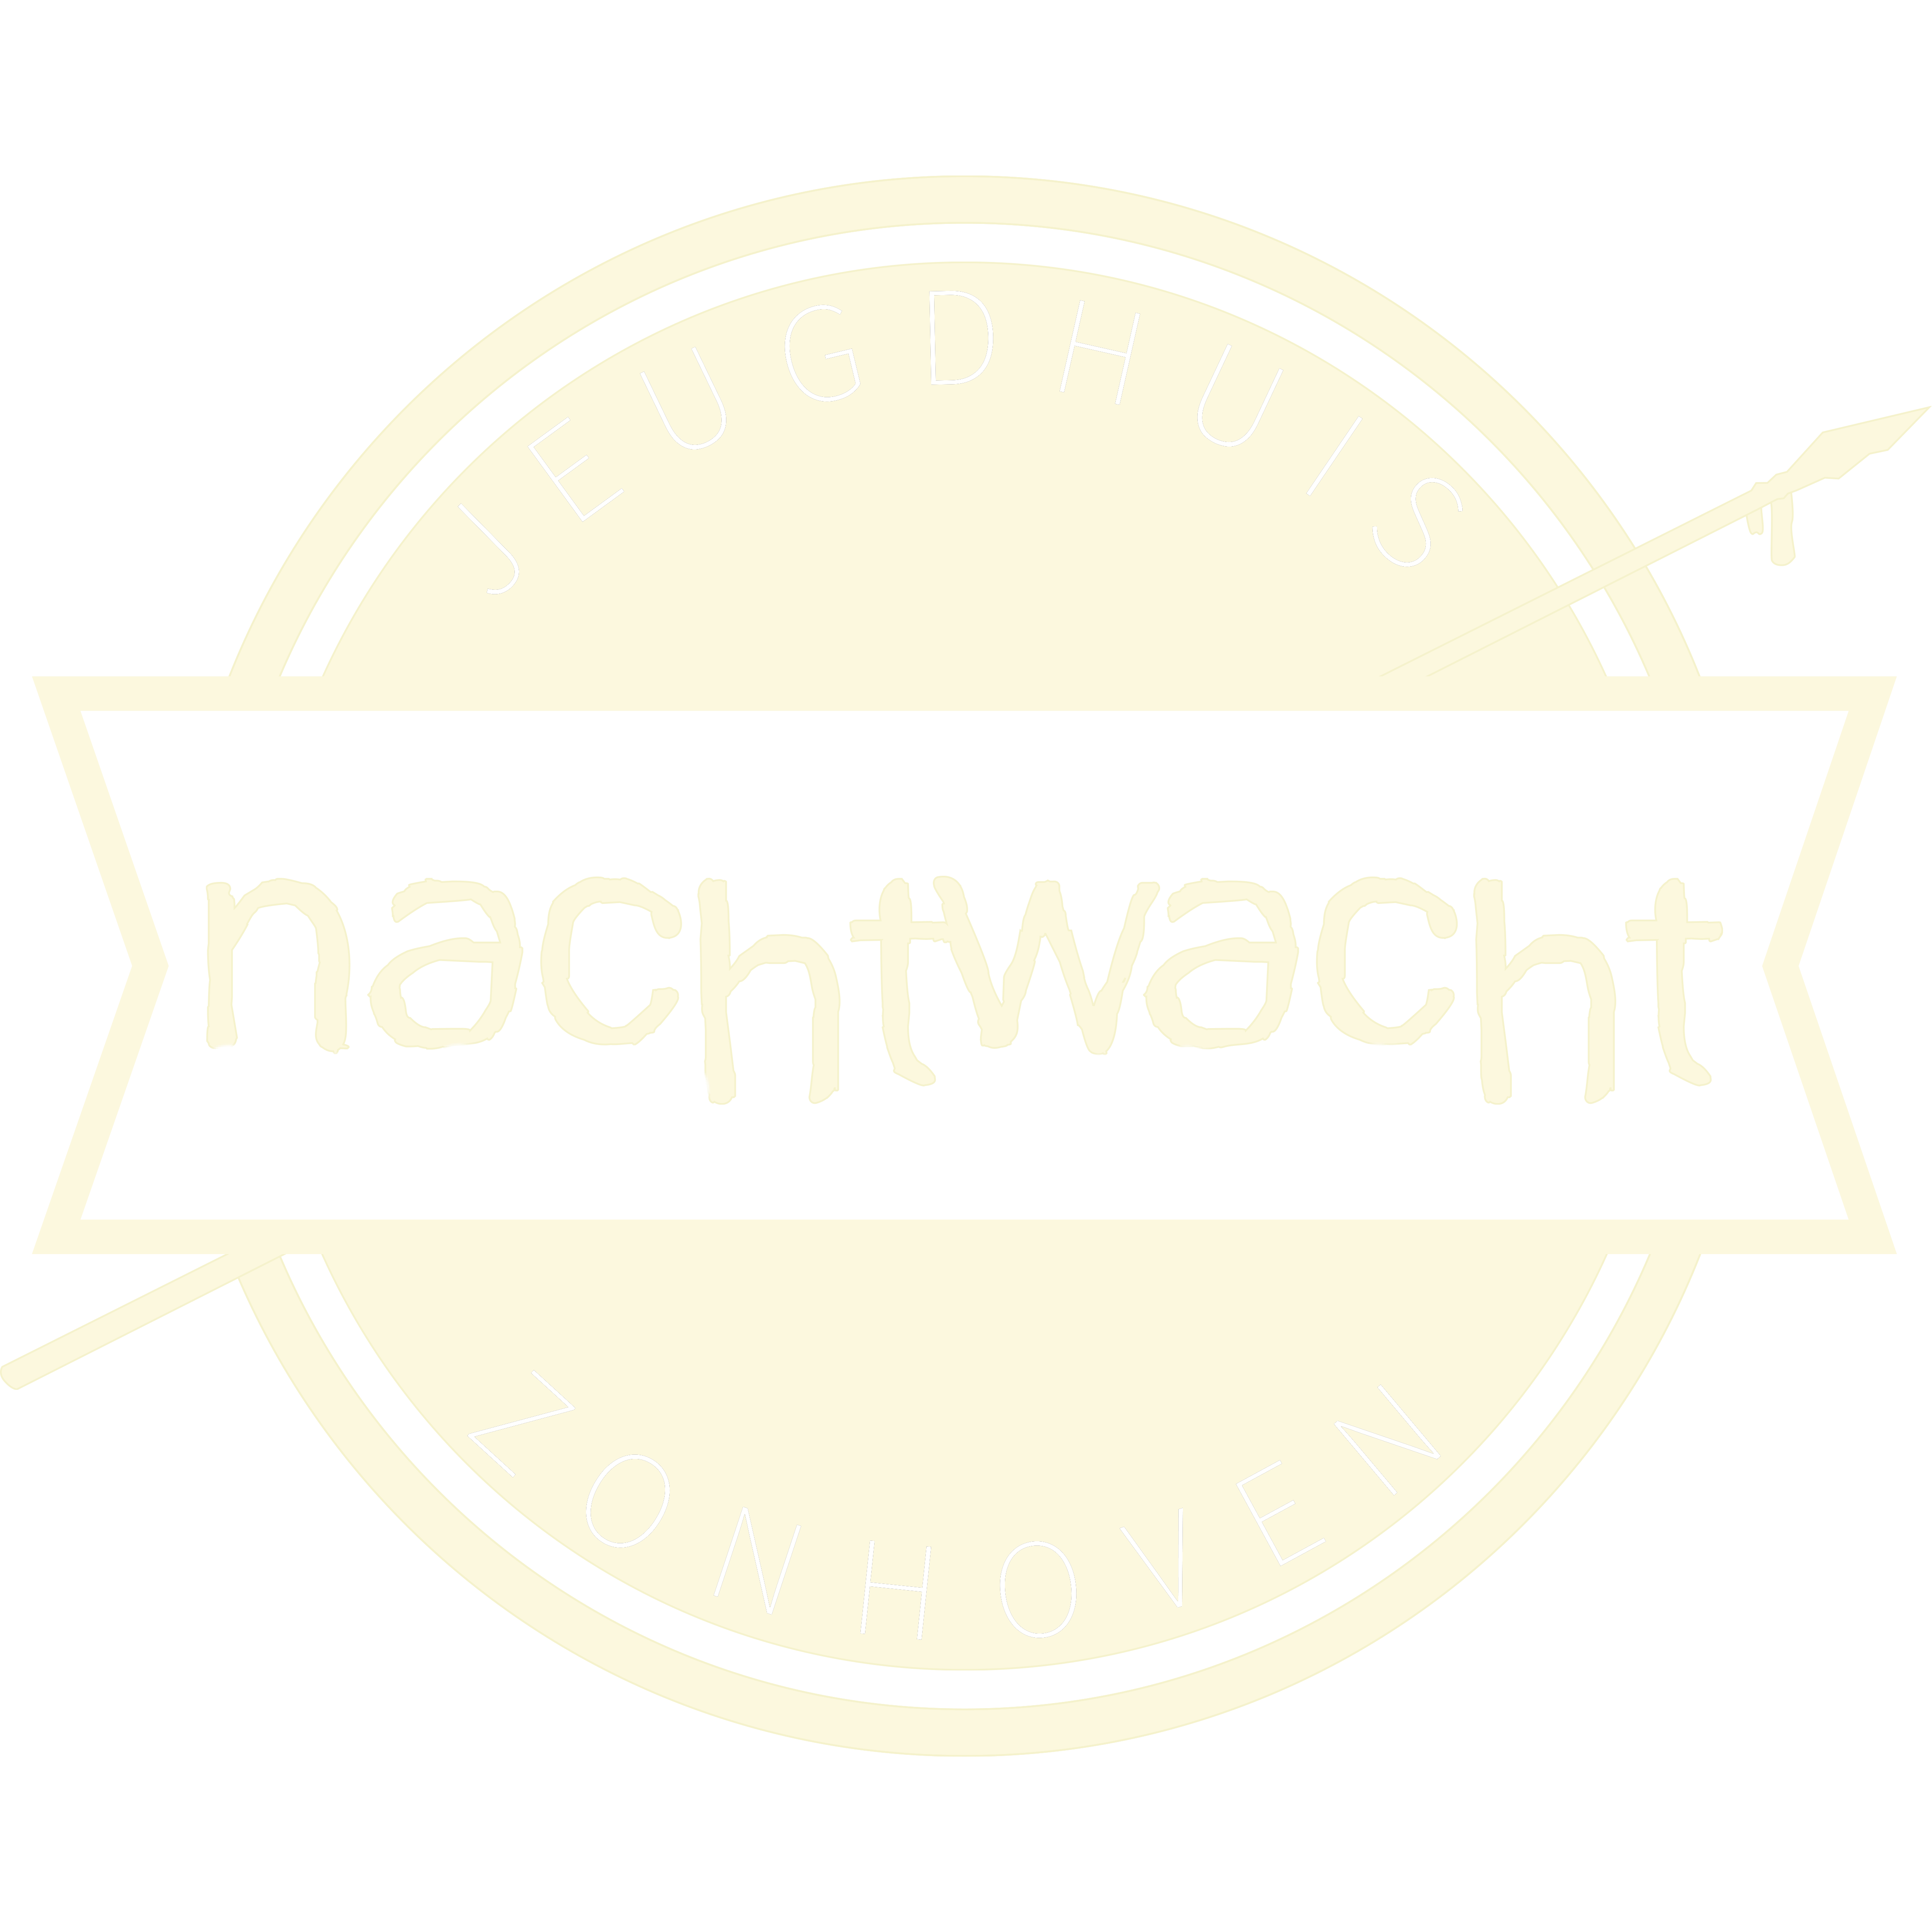 Nachtwacht logo header